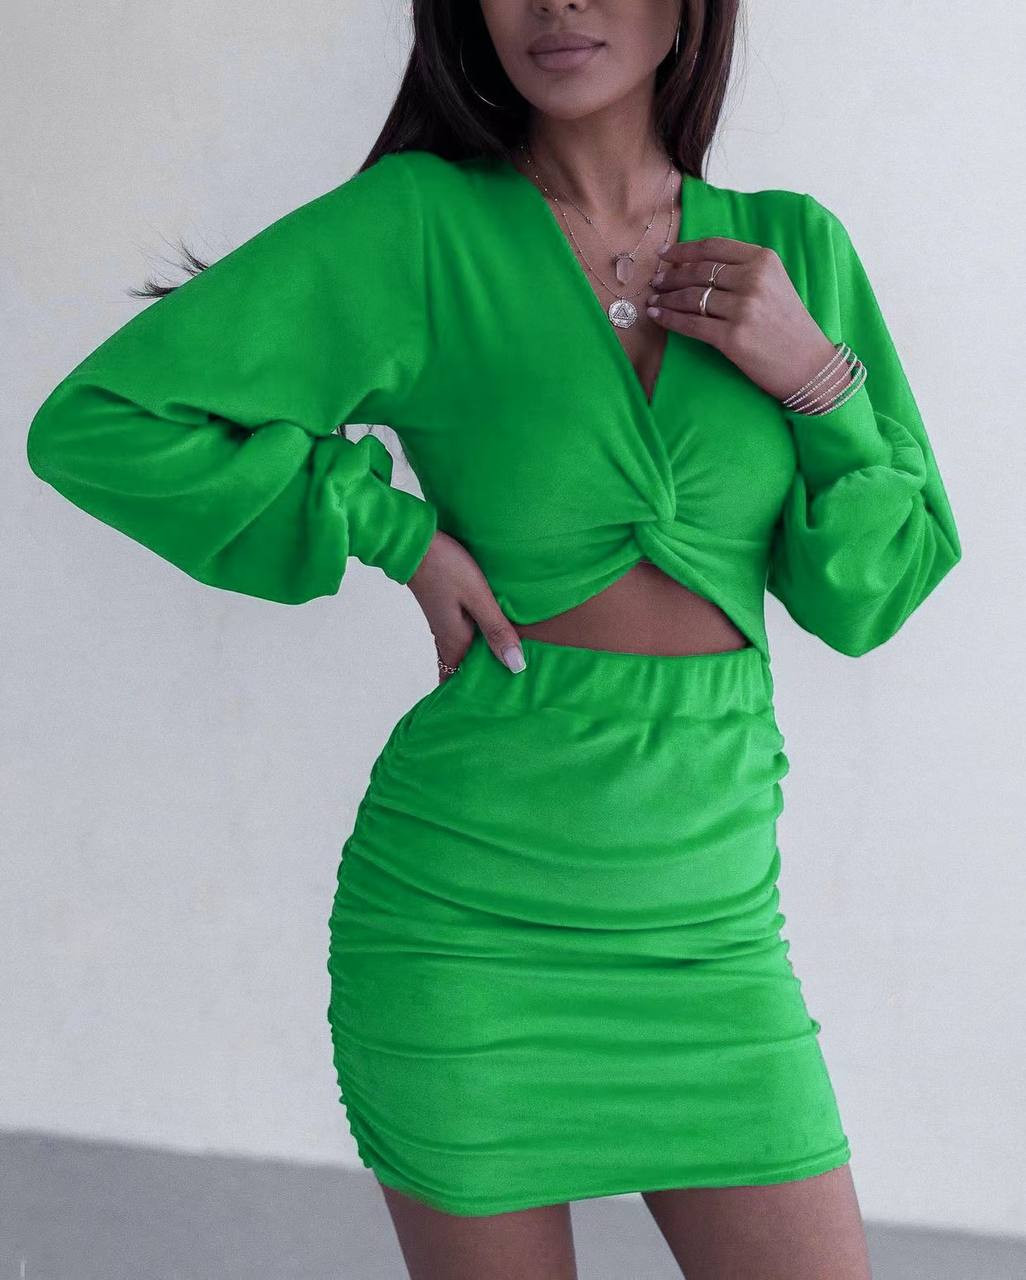 Γυναικείο εντυπωσιακό φόρεμα 4254 πράσινο